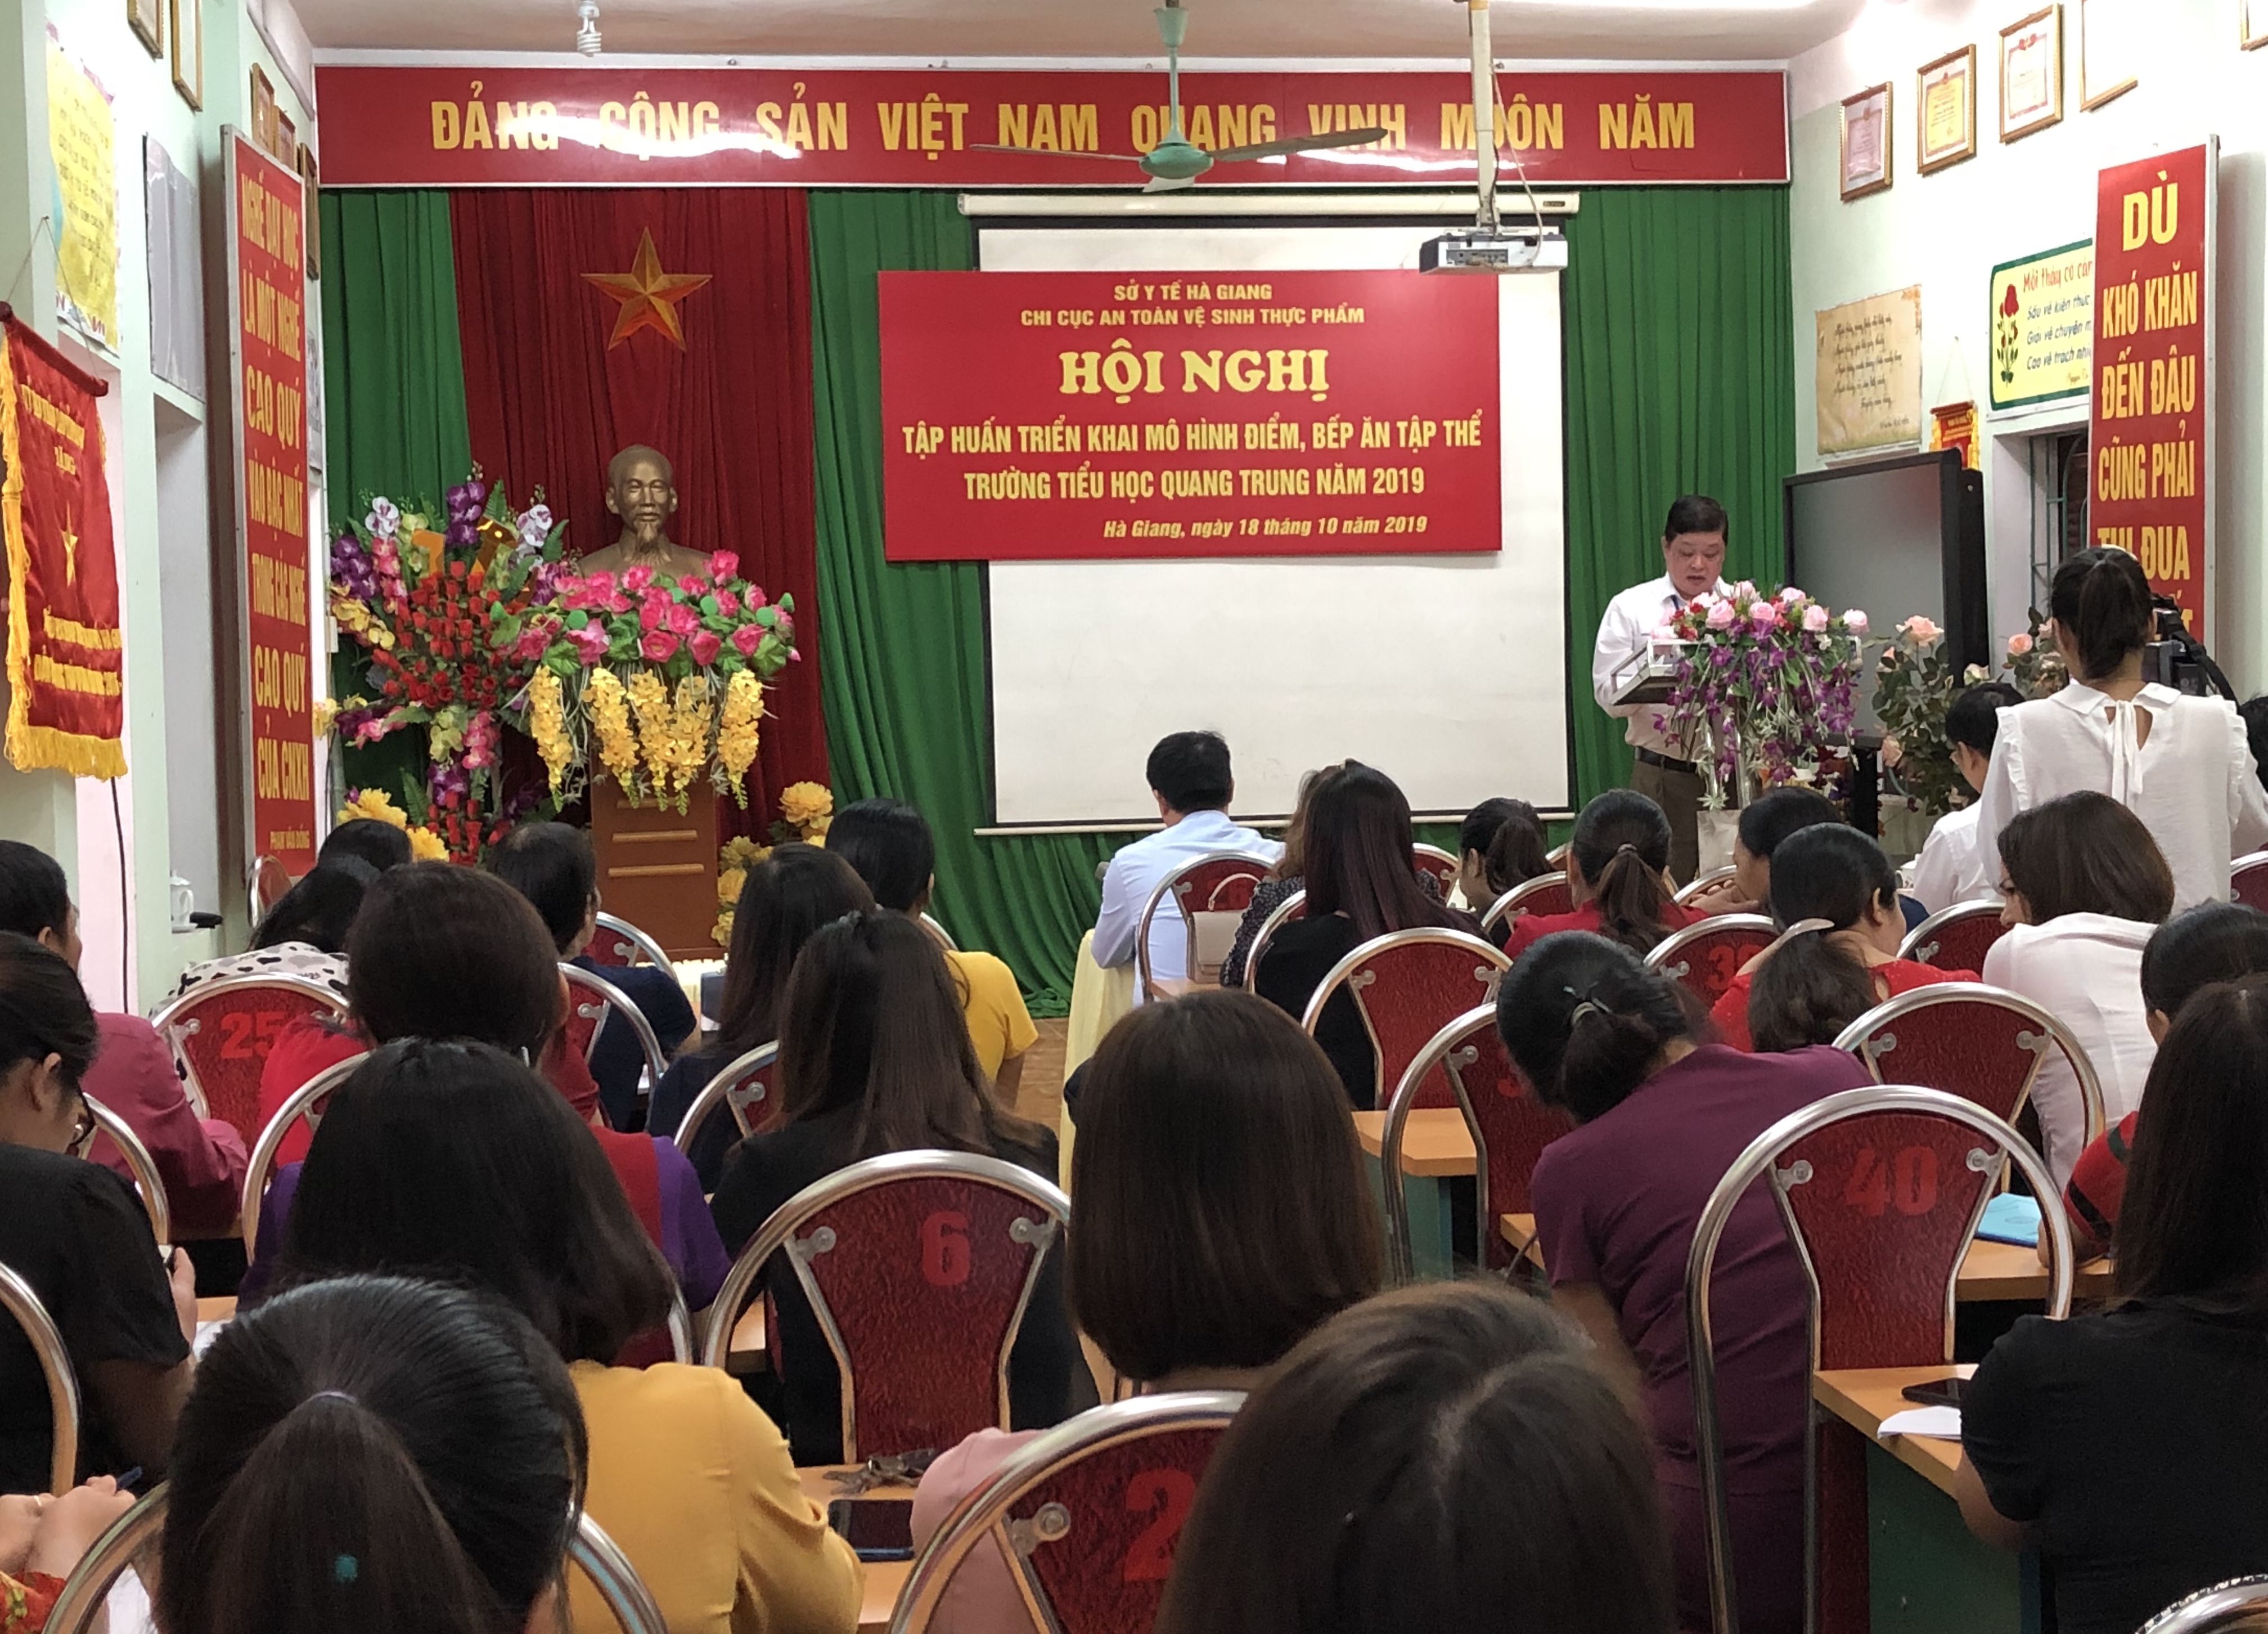 Chi cục An toàn vệ sinh thực phẩm phối hợp tổ chức Hội nghị tập huấn triển khai mô hình điểm bếp ăn tập thể Trường tiểu học Quang Trung, thành phố Hà Giang năm 2019